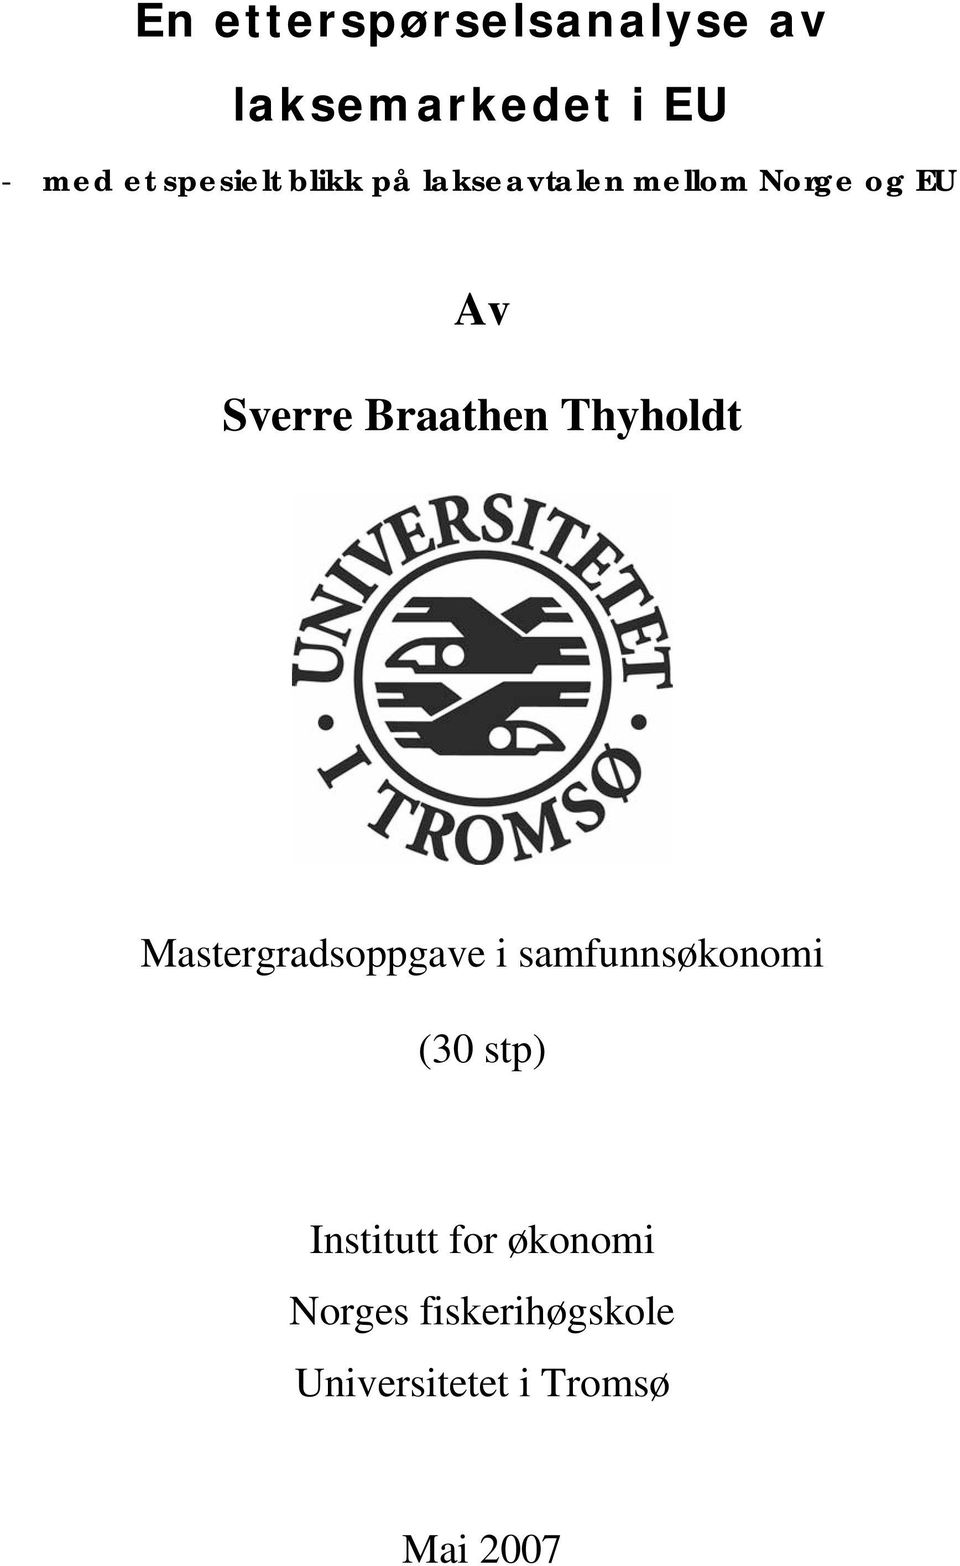 Braathen Thyholdt Mastergradsoppgave samfunnsøkonom (30